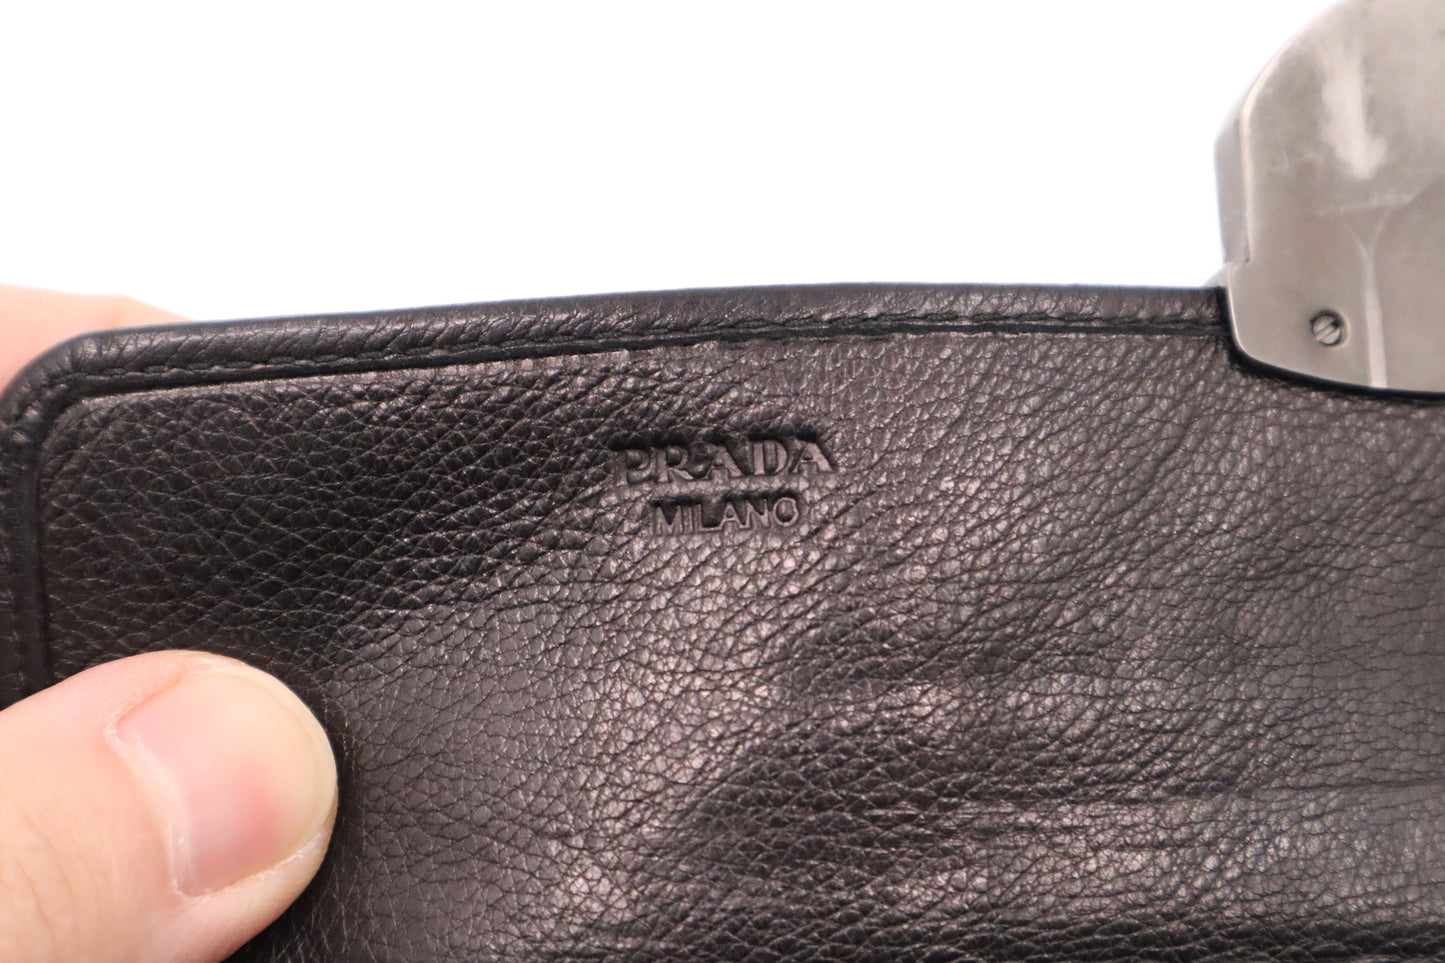 Prada Long Wallet in Black Leather